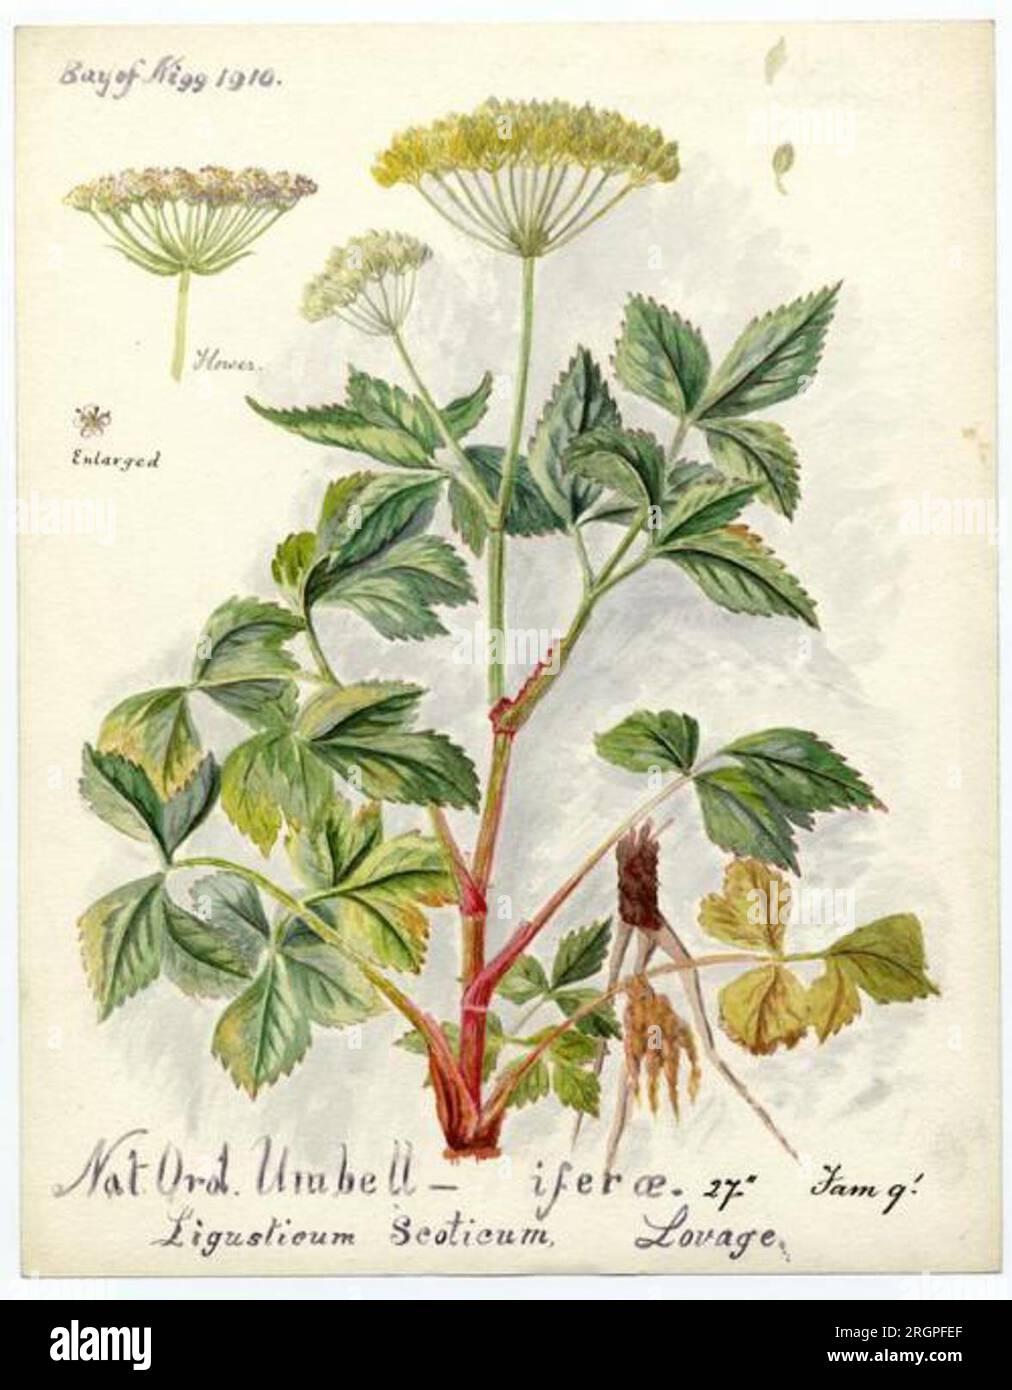 lovage (ligusticum scoticum) - William Catto 1910 by William Catto Stock Photo